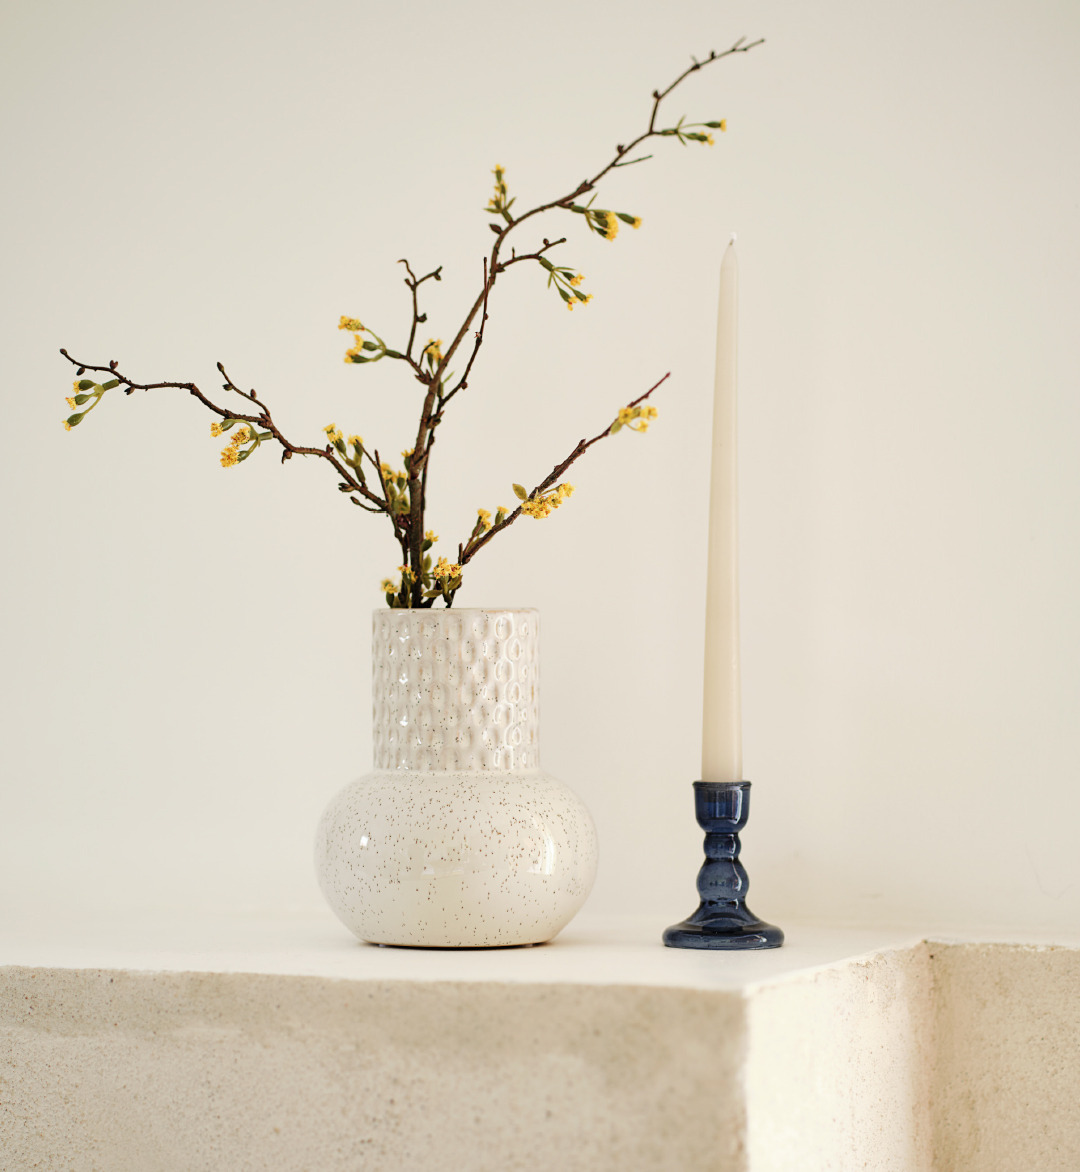 Vase mit Zeig neben einem Kerzenständer auf einer Mauer